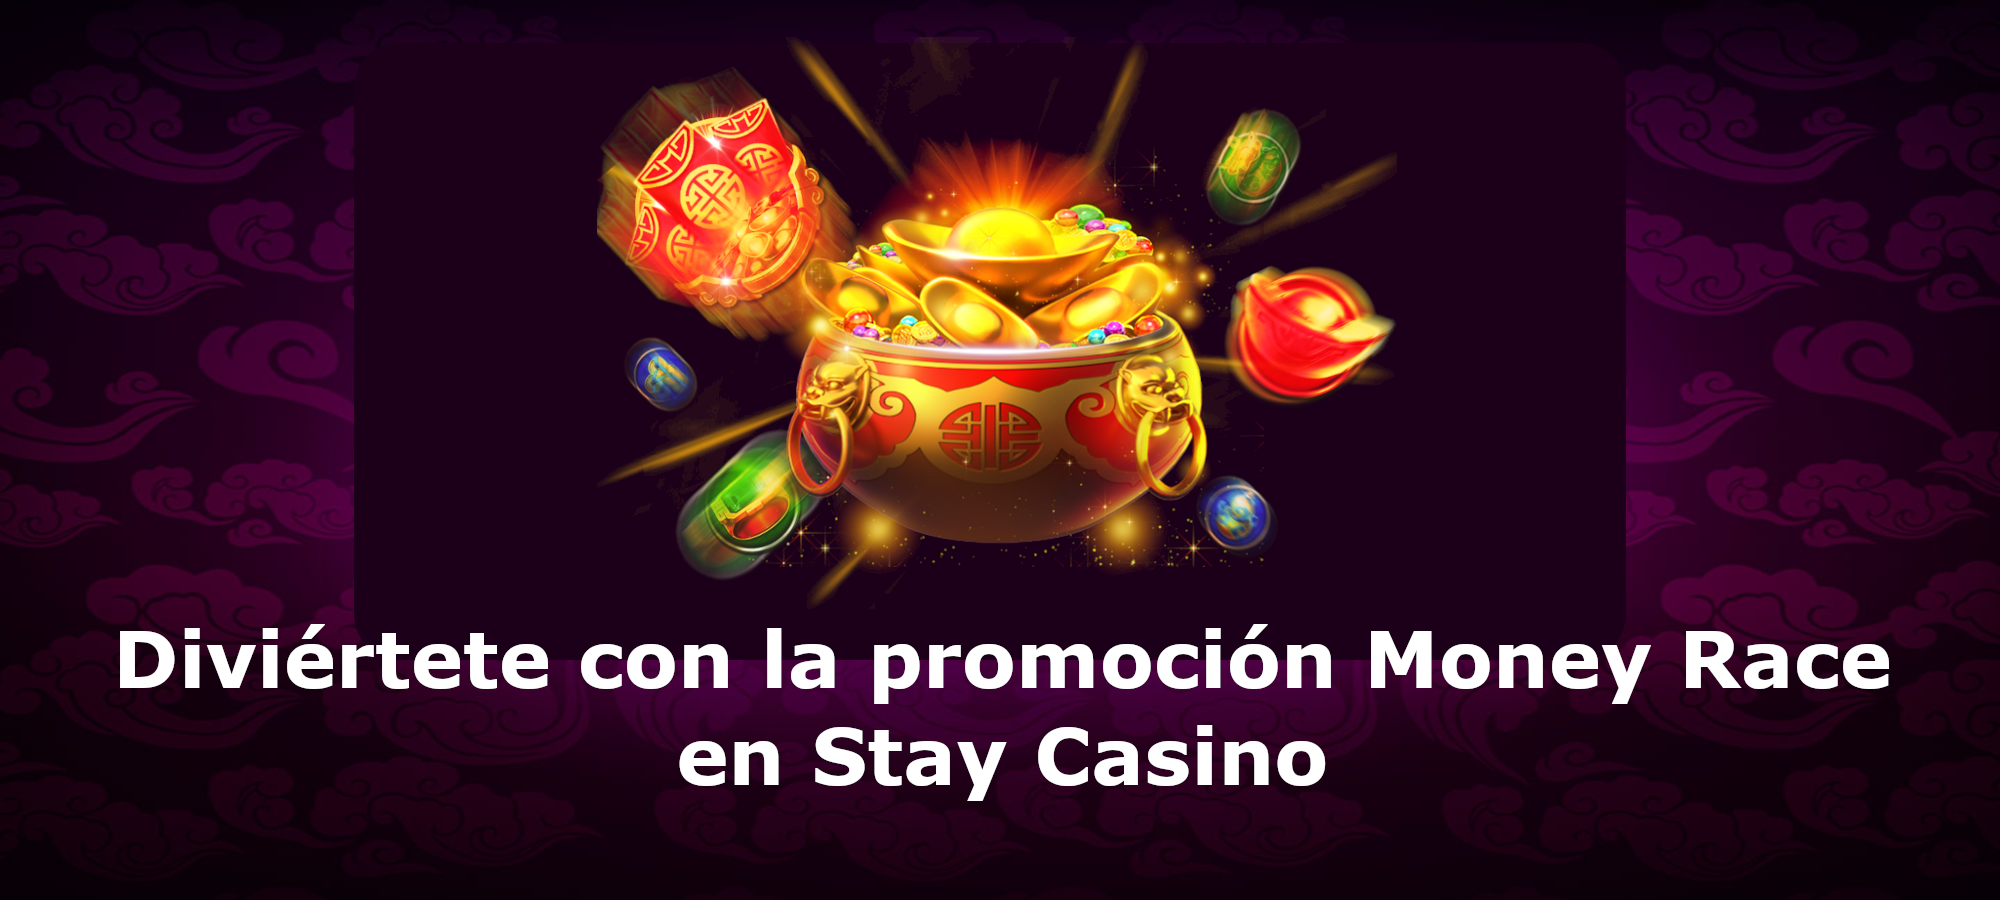 Diviértete con la Promoción Money Race en Stay Casino